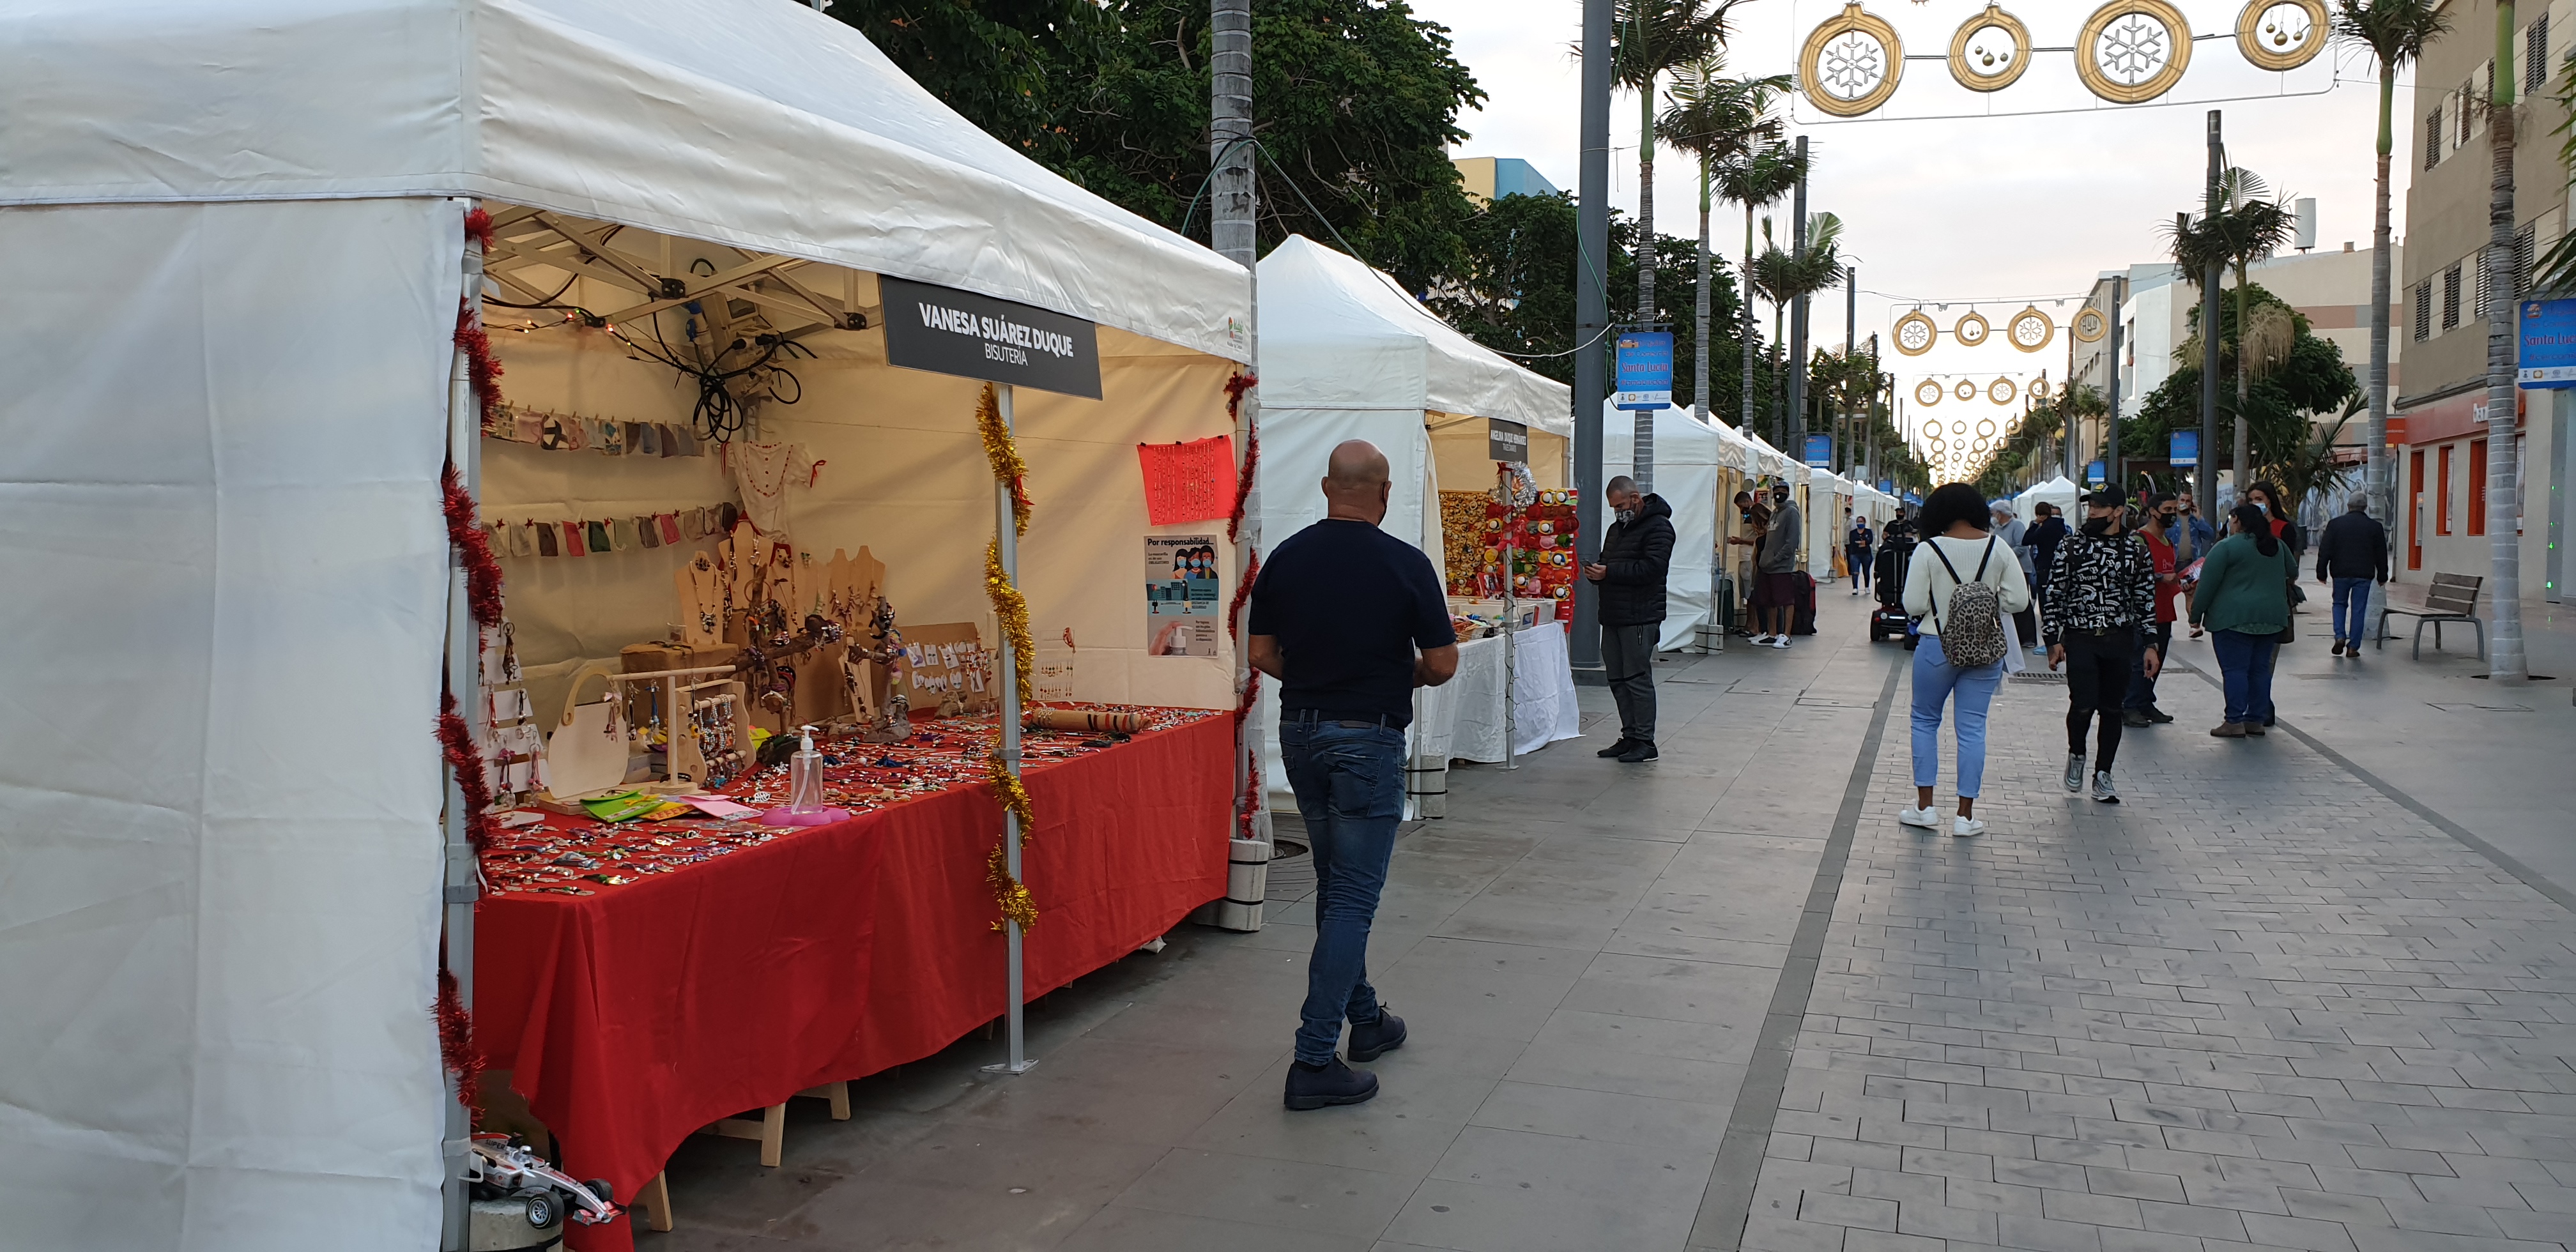 La Feria de Navidad regresa a la Avenida de Canarias con puestos de artesanía, reciclaje, bisutería y productos de repostería creativa